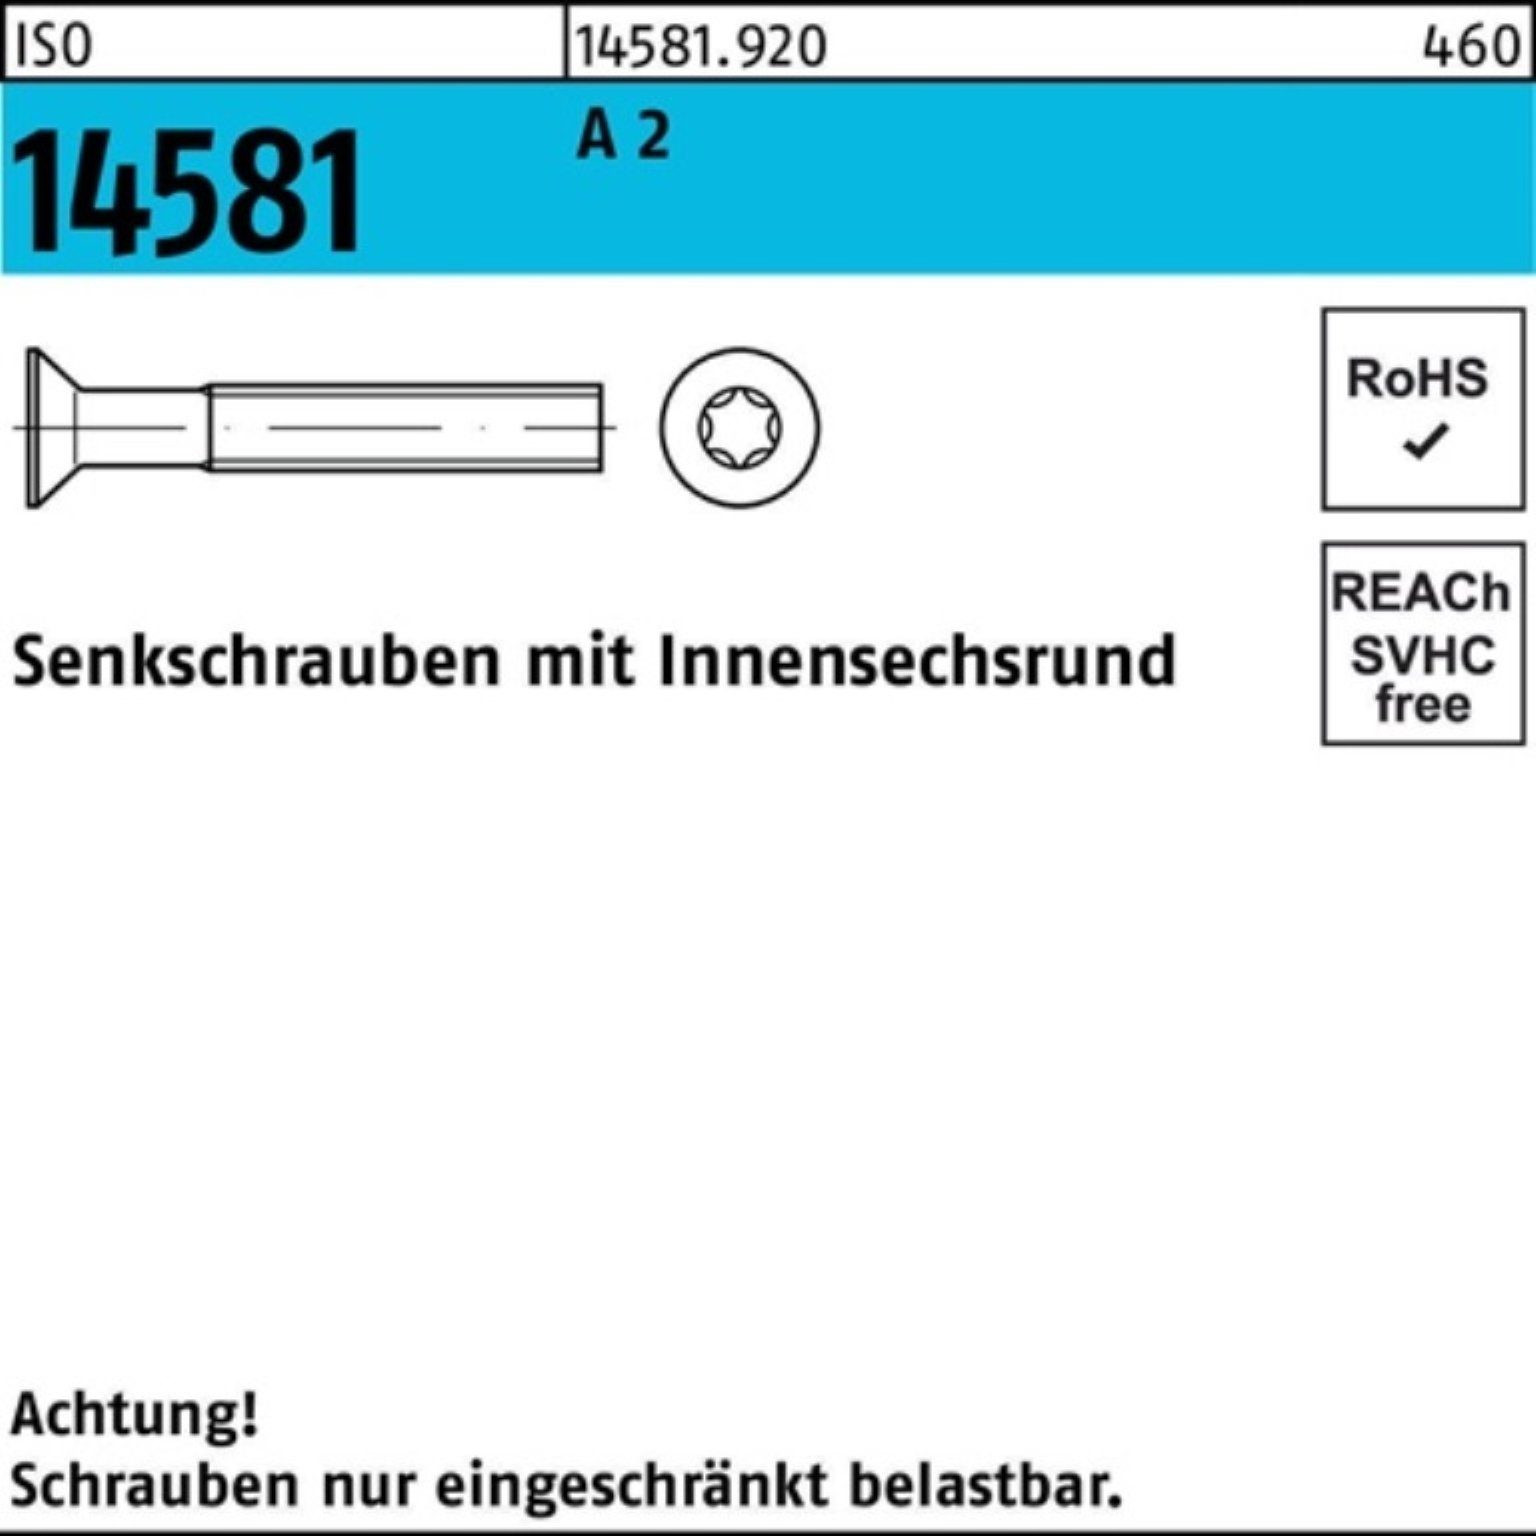 Stück 2 Reyher 2000 A 1 T6 Pack Senkschraube ISR M2x 14581 Senkschraube 2000er ISO 12 ISO